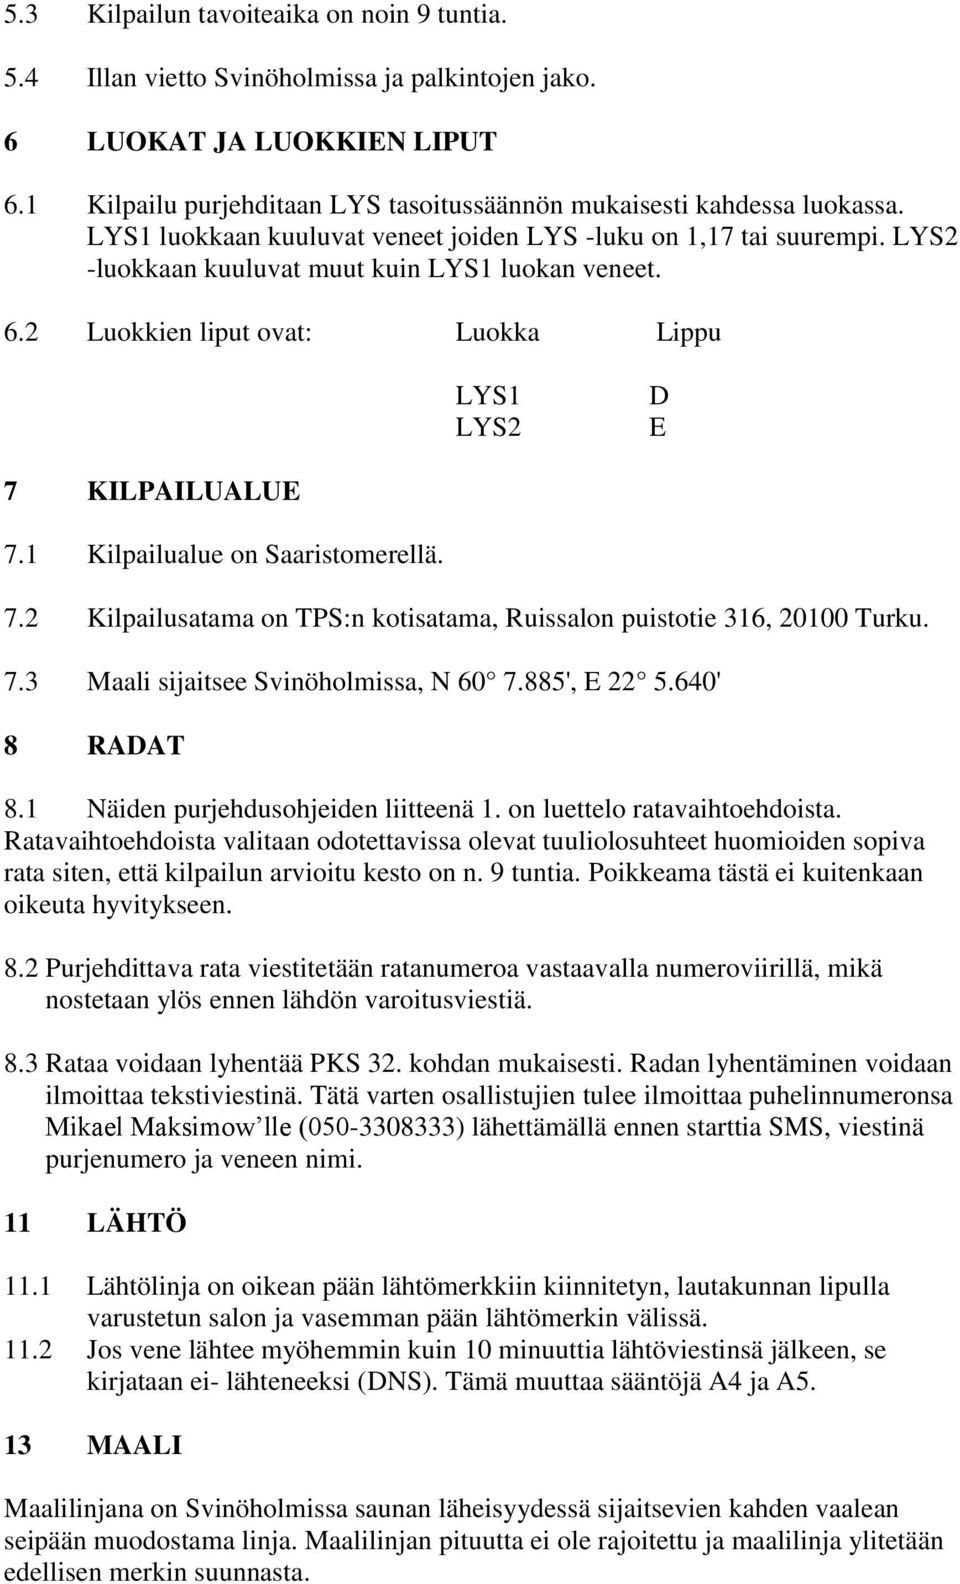 1 Kilpailualue on Saaristomerellä. 7.2 Kilpailusatama on TPS:n kotisatama, Ruissalon puistotie 316, 20100 Turku. 7.3 Maali sijaitsee Svinöholmissa, N 60 7.885', E 22 5.640' 8 RADAT 8.